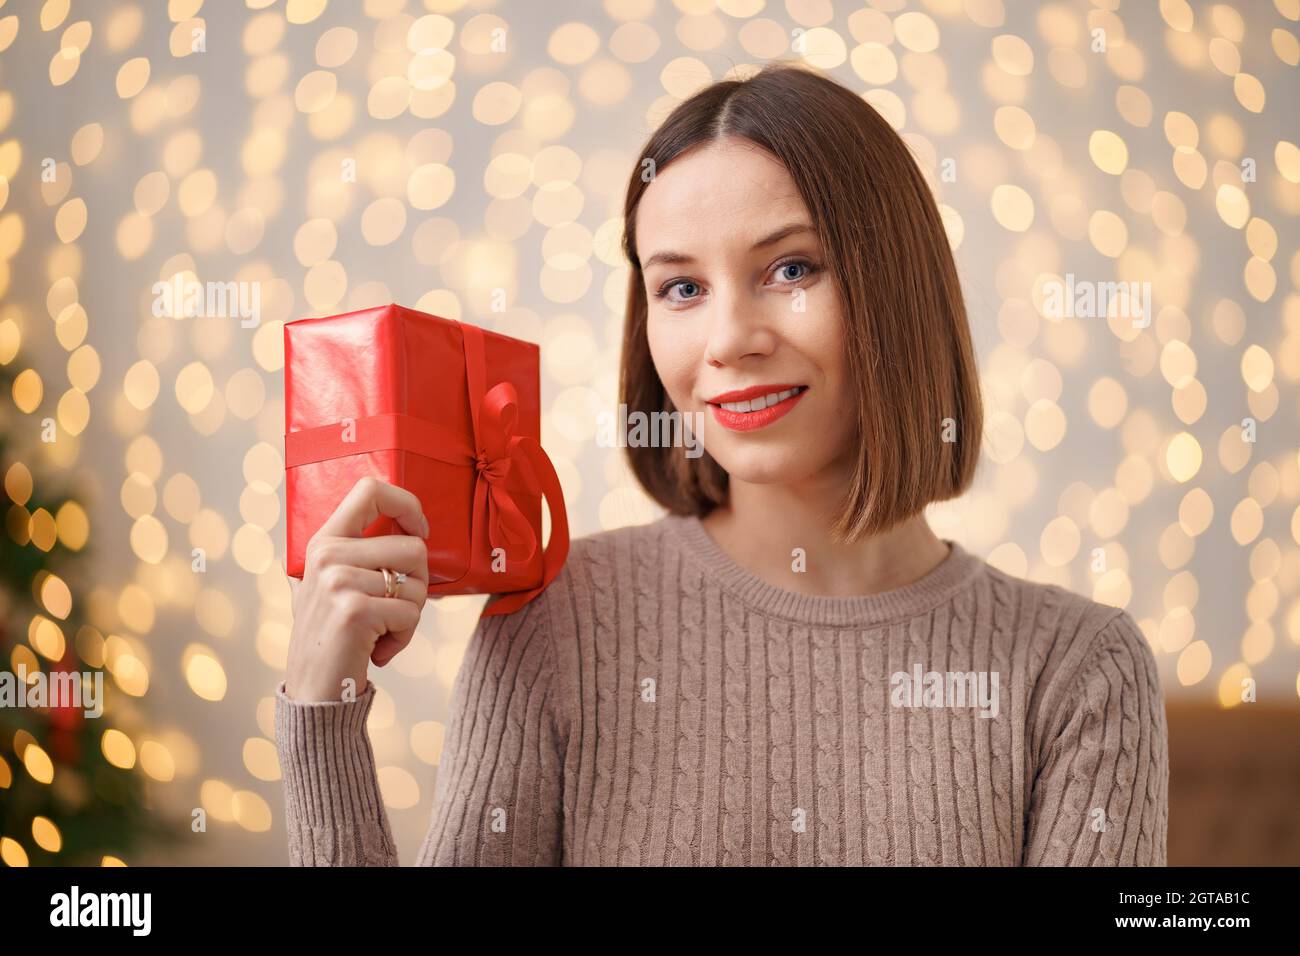 Portrait d'une jeune femme heureuse lèvres rouges tenant une boîte cadeau emballée. Gros plan la femme satisfaite a reçu la boîte actuelle. Arrière-plan des lumières de Noël festives. Banque D'Images